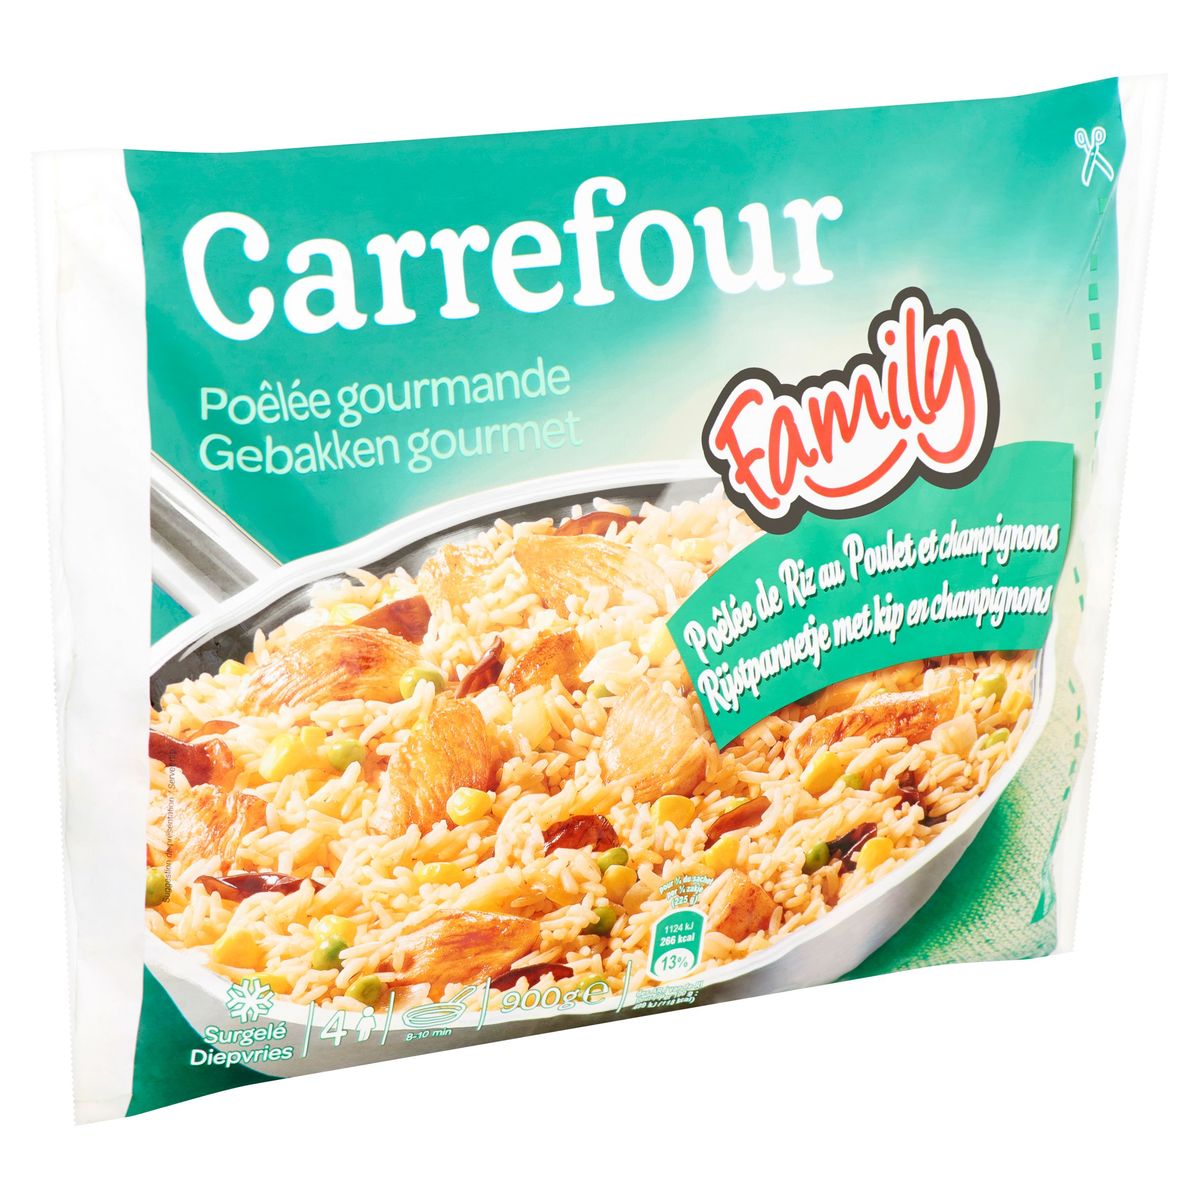 Carrefour Gebakken Gourmet Rijstpannetje met Kip en Champignons 900 g